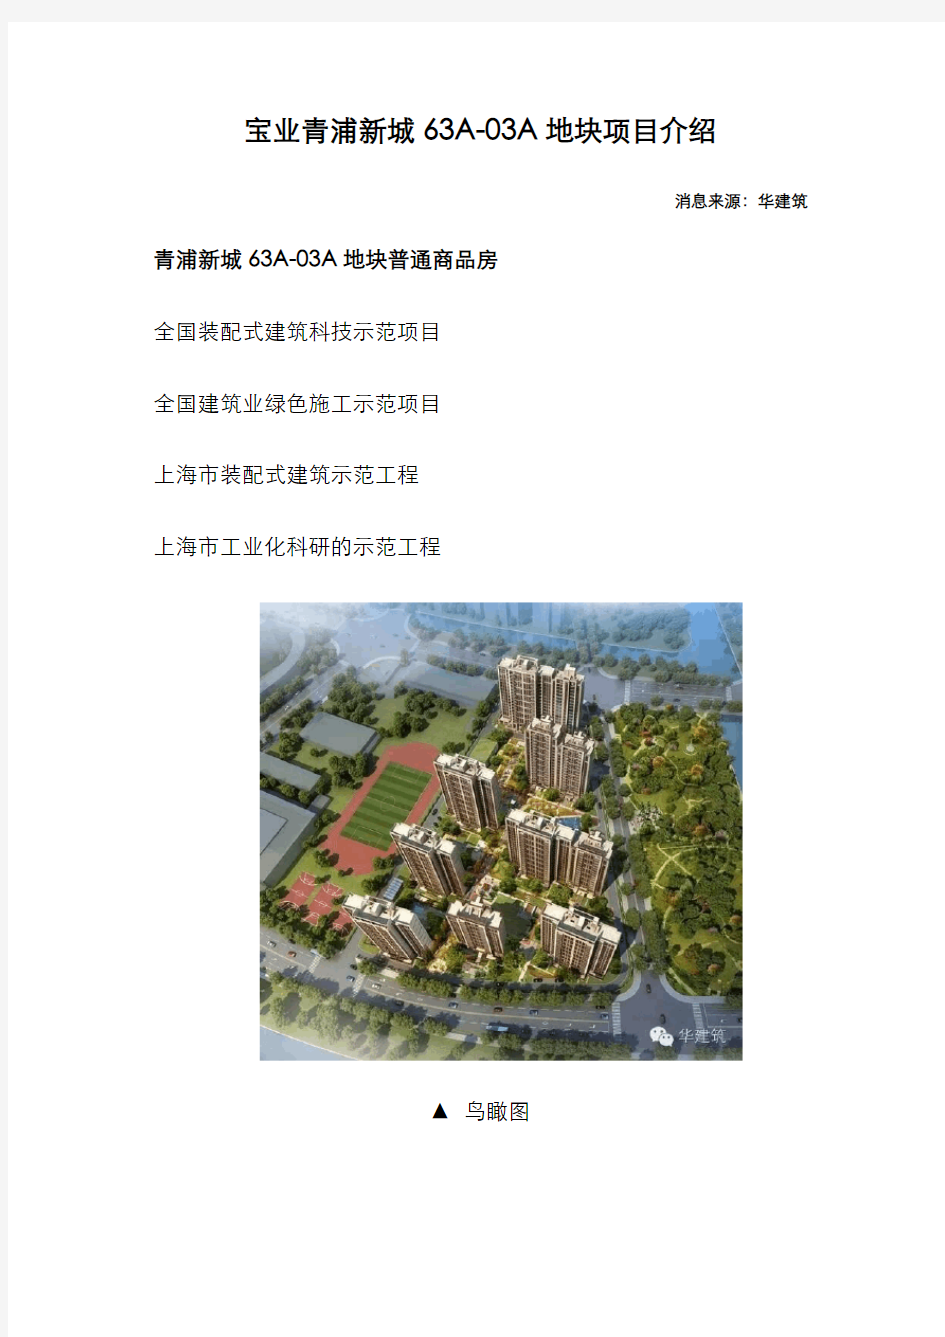 装配式建筑科技示范项目——青浦新城63A-03A地块普通商品房